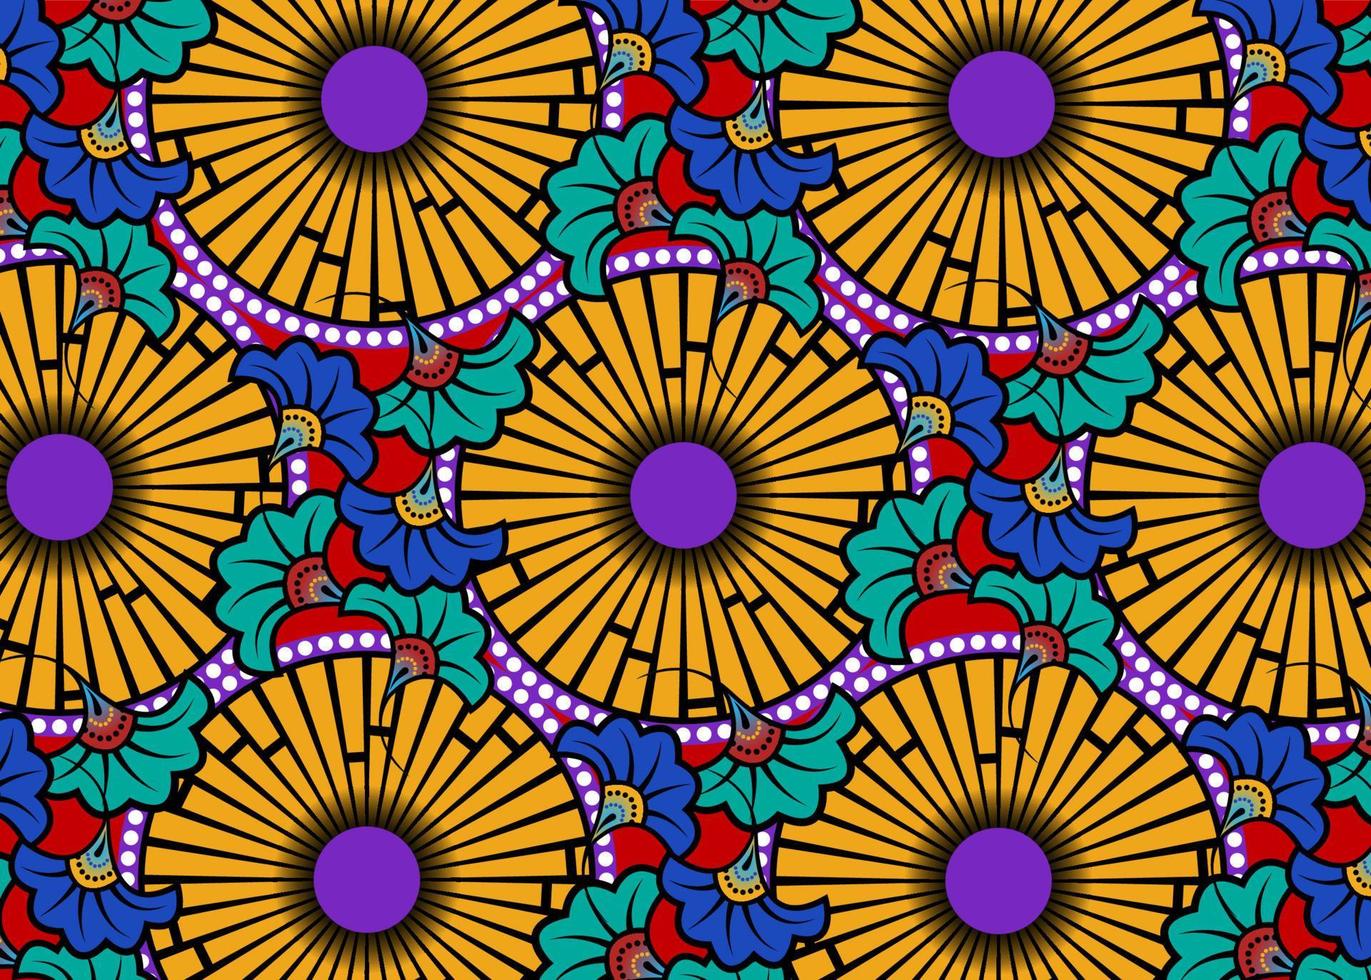 tissu d'impression de cire africaine, ornement ethnique fait à la main pour votre conception, fleurs ethniques afro et éléments géométriques de motifs tribaux. texture colorée de vecteur, arrière-plan de style de mode textile afrique ankara vecteur